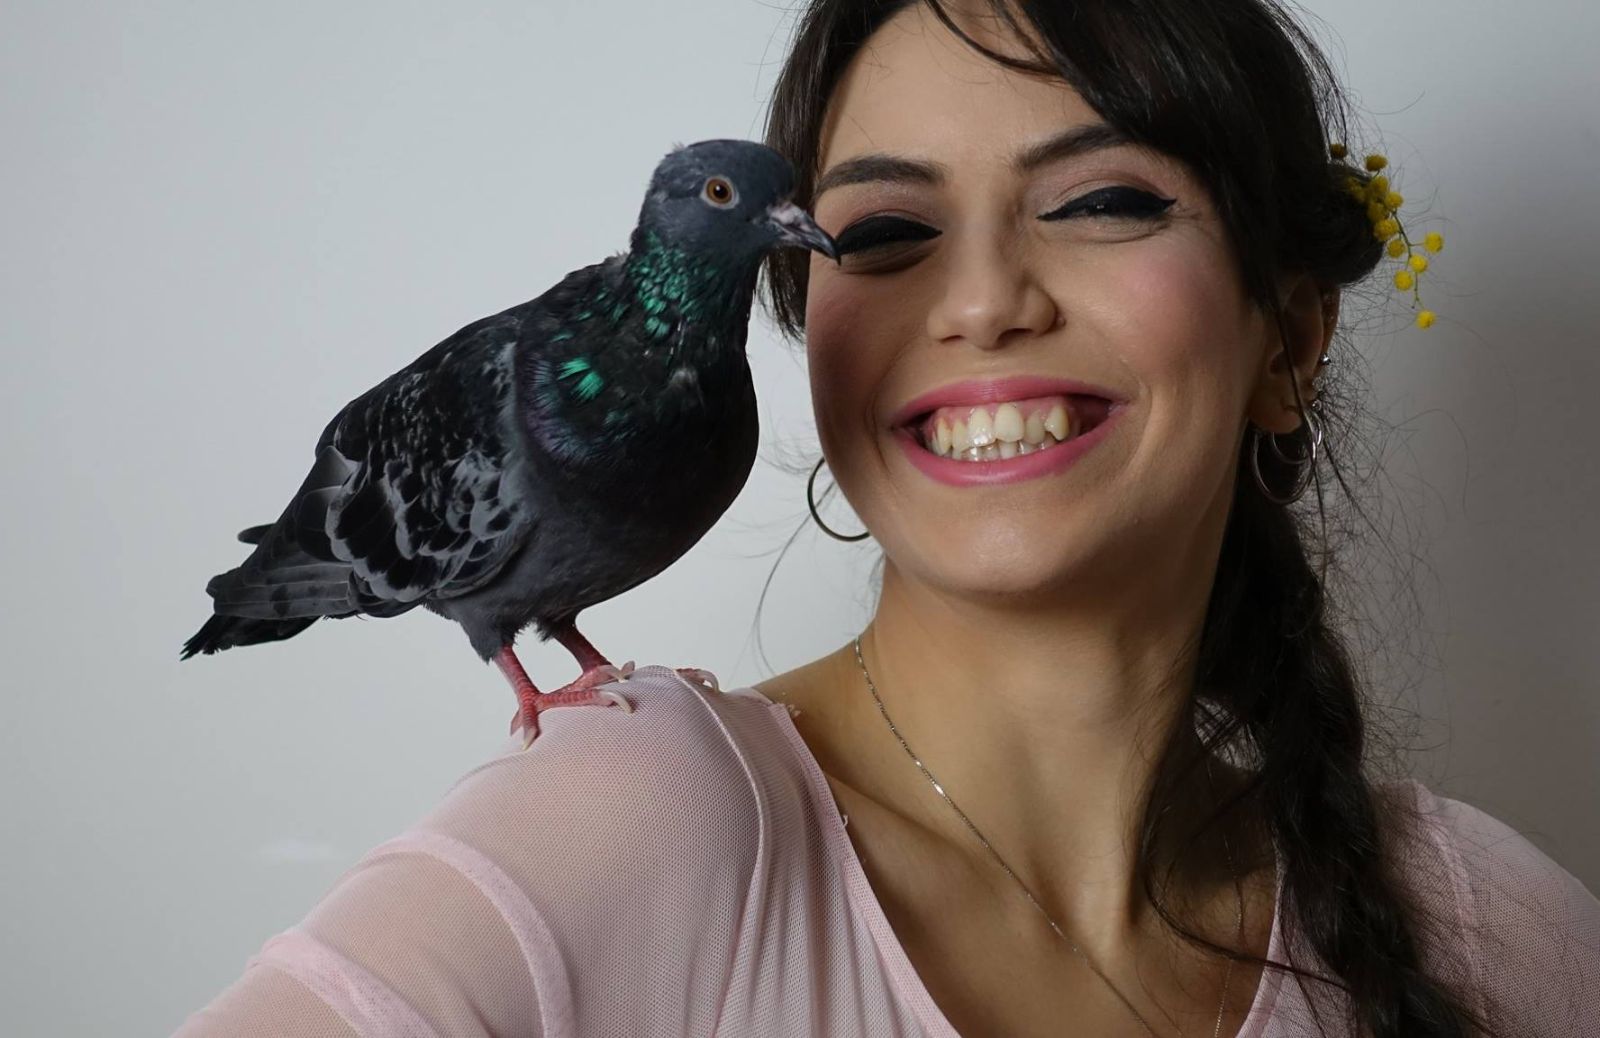 Adottare un piccione, l'esperienza di Antonella: “Sono coccolosi come cane e gatto”